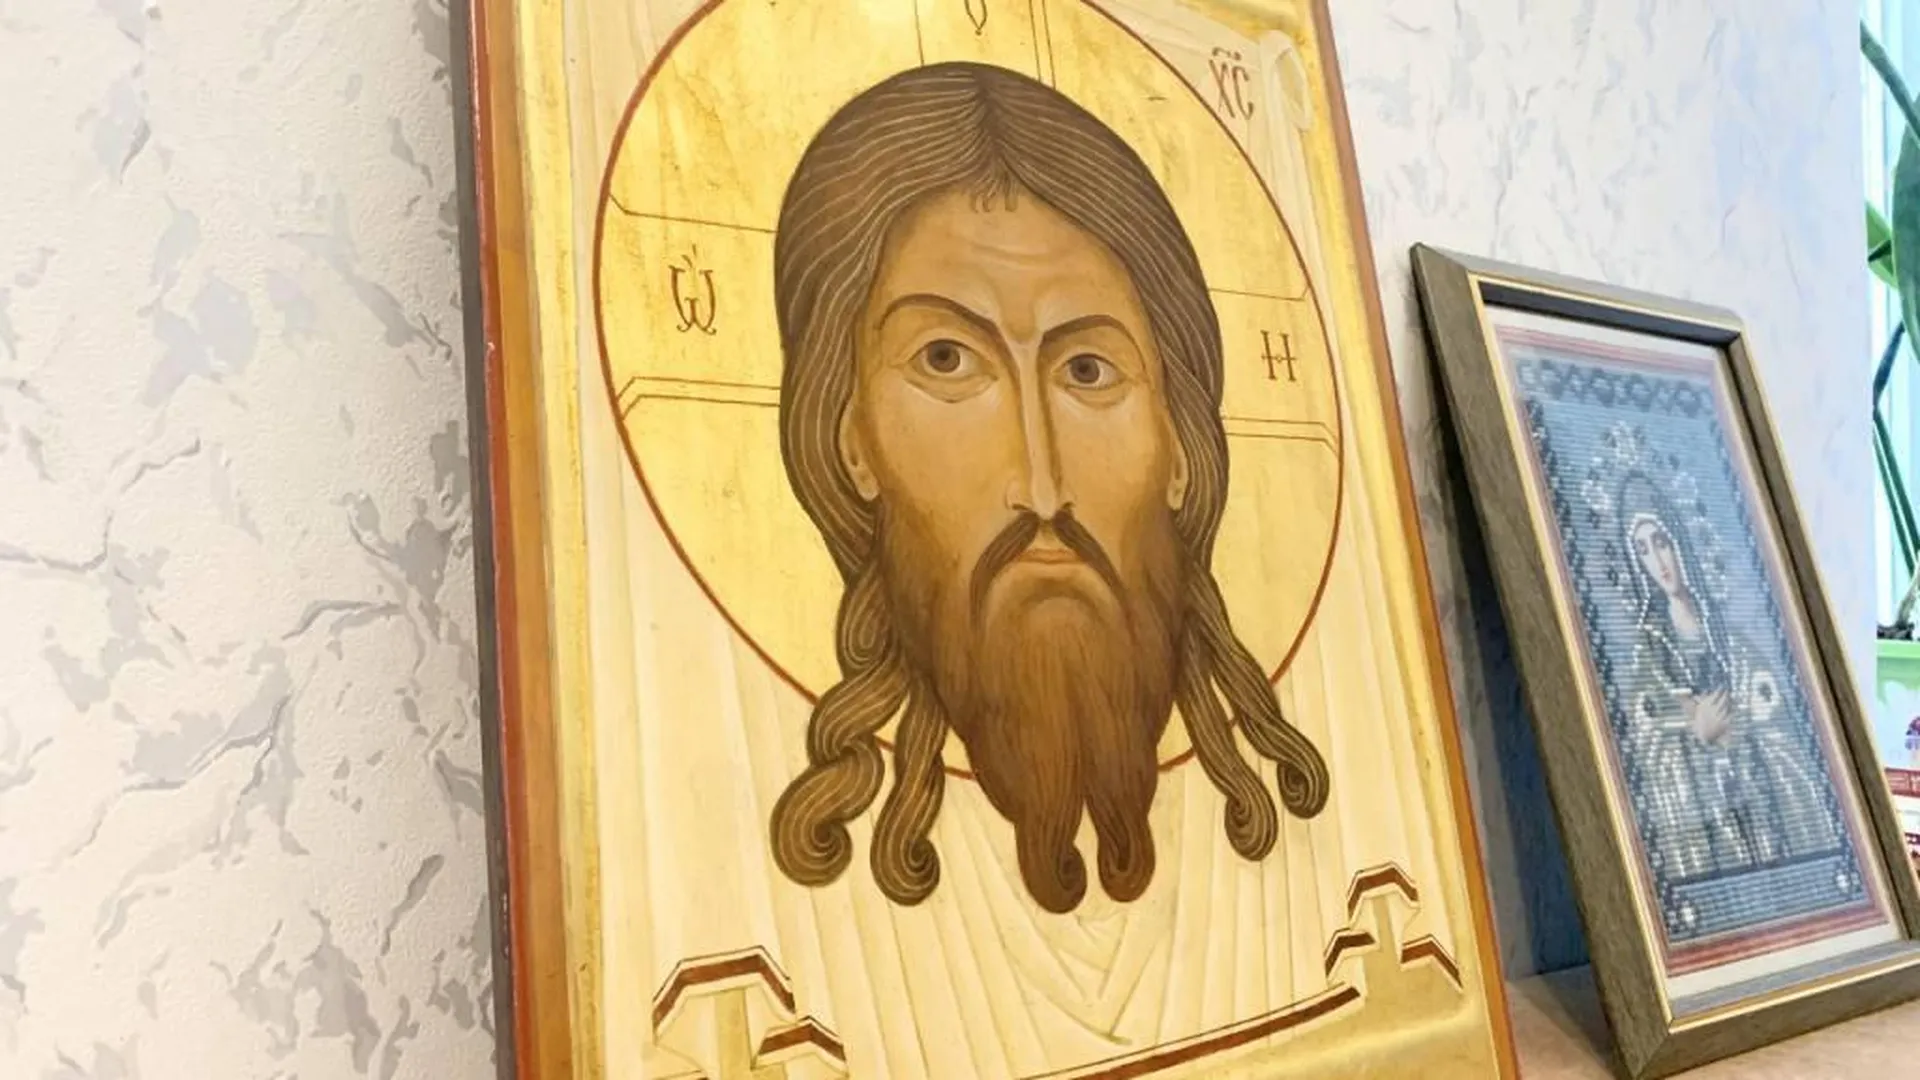 Иконописец Балашихи передал изображение Георгия Победоносца в храм на Донбассе